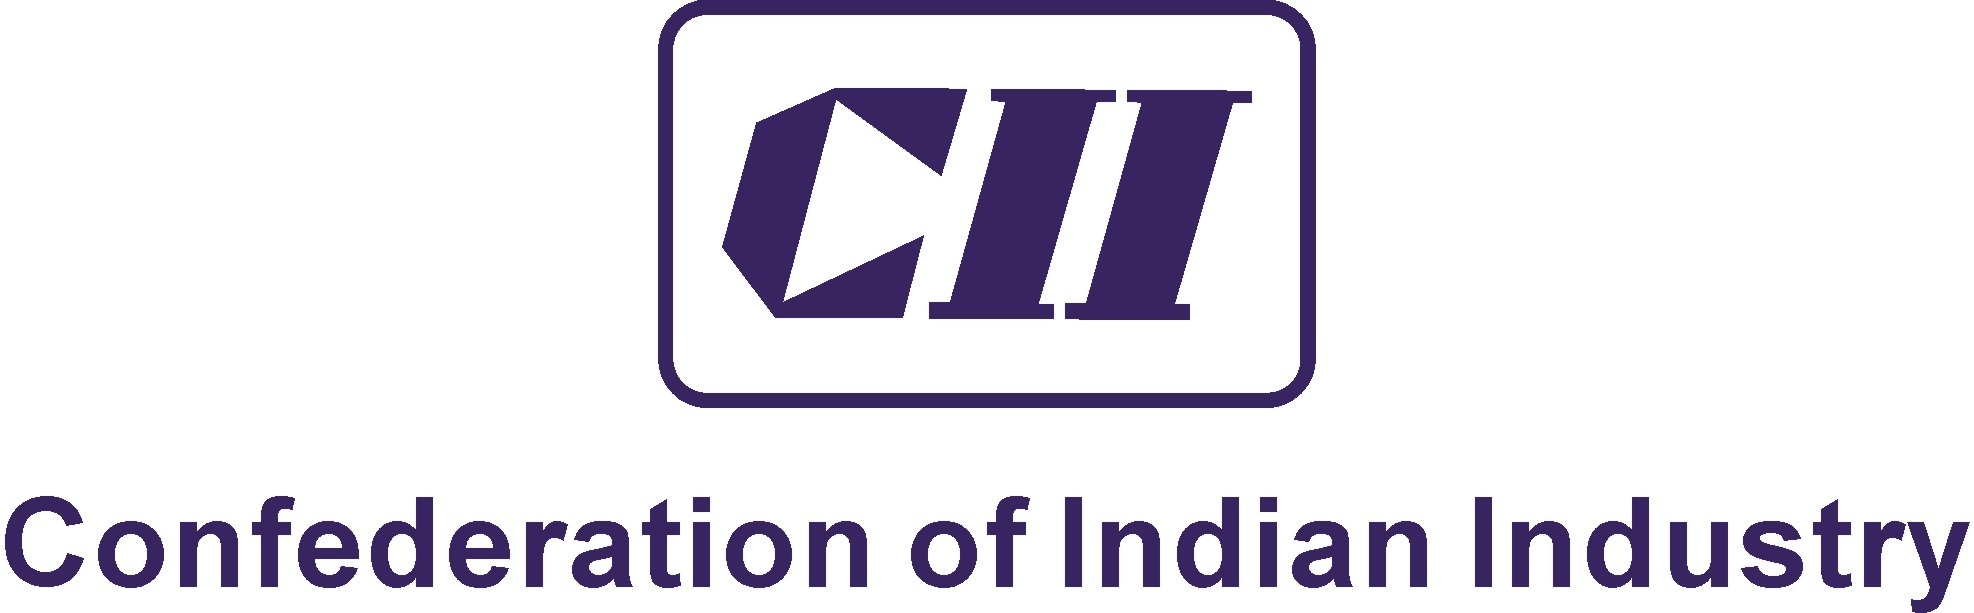 CII.jpg